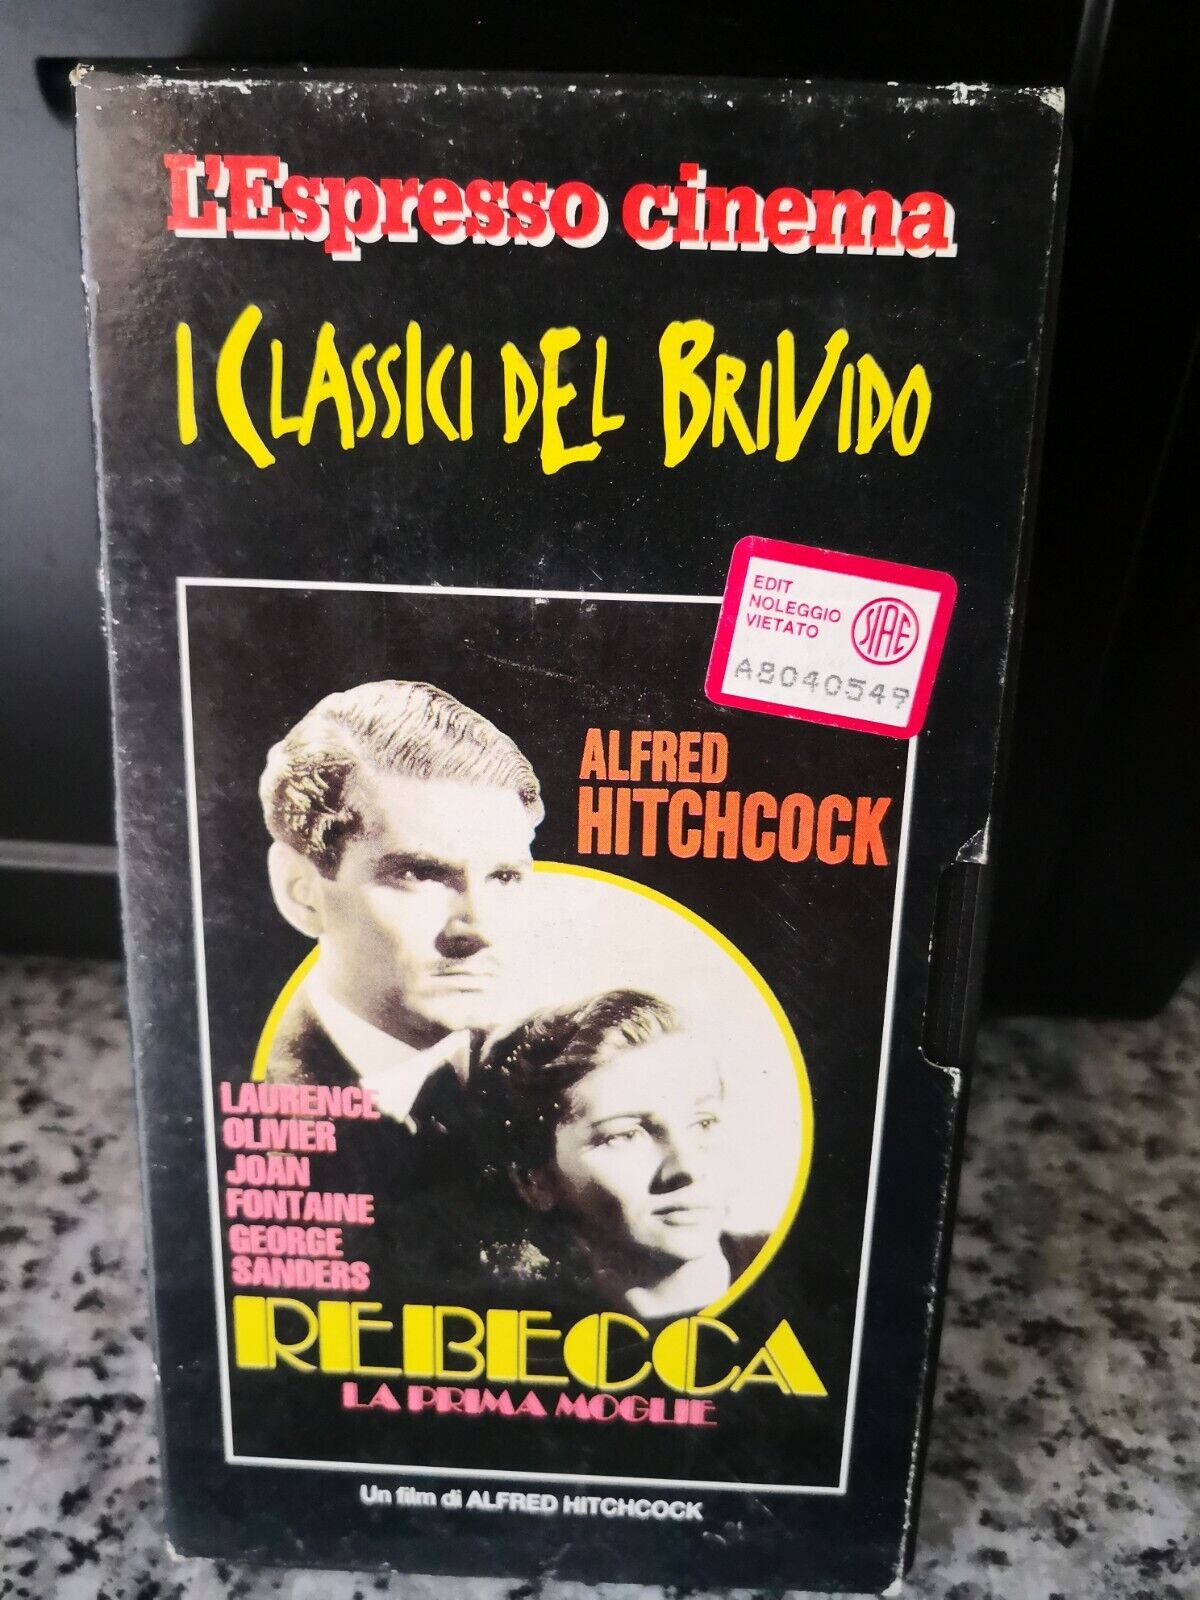 Rebecca la prima moglie - vhs -1967 - L'espresso cinema -F